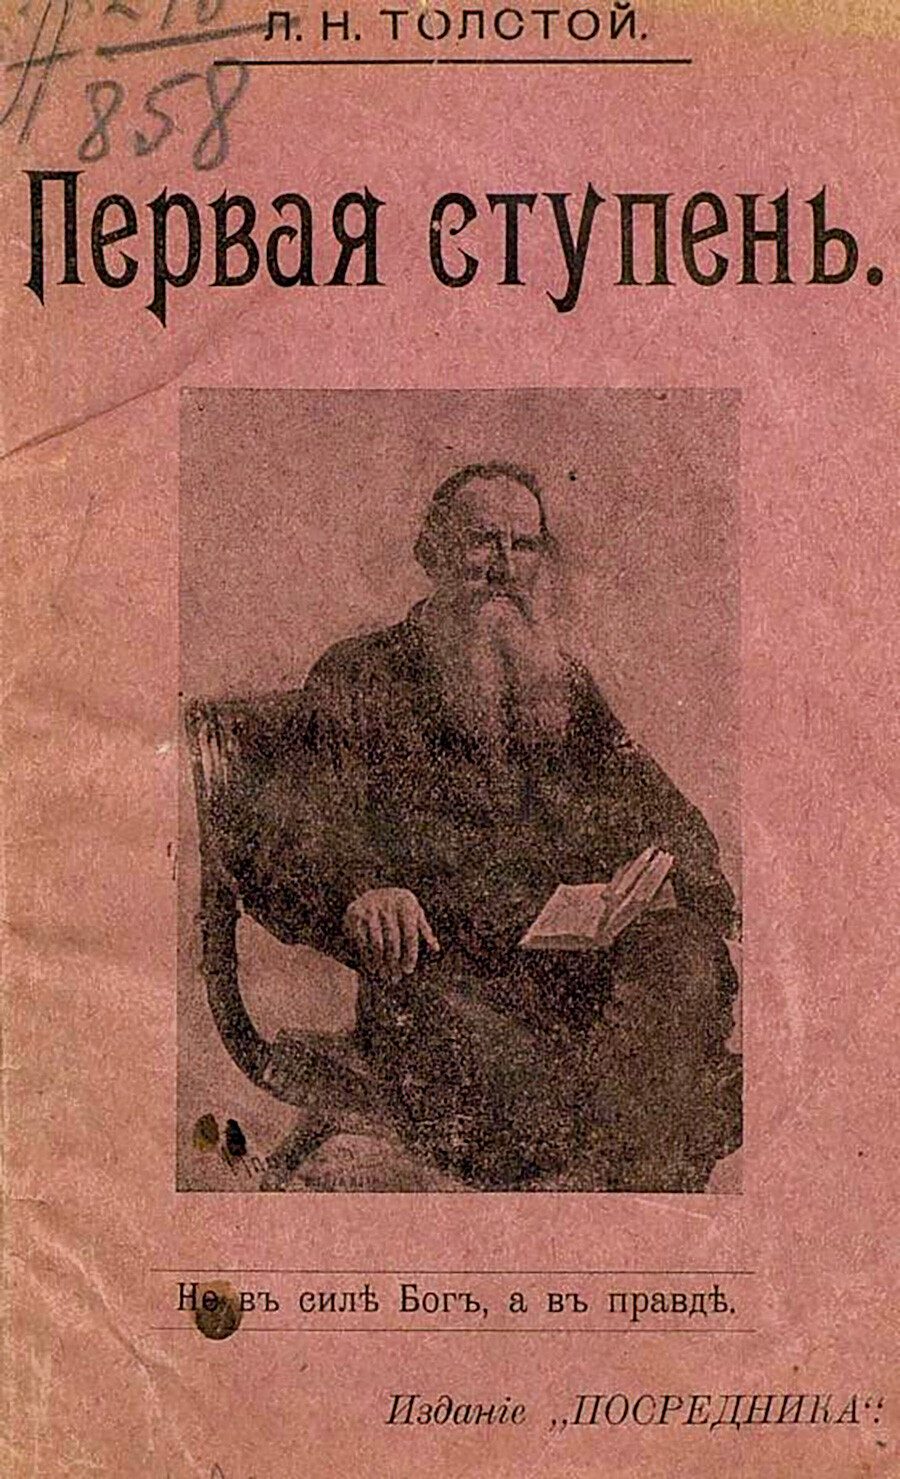 Leo Tolstoy, 